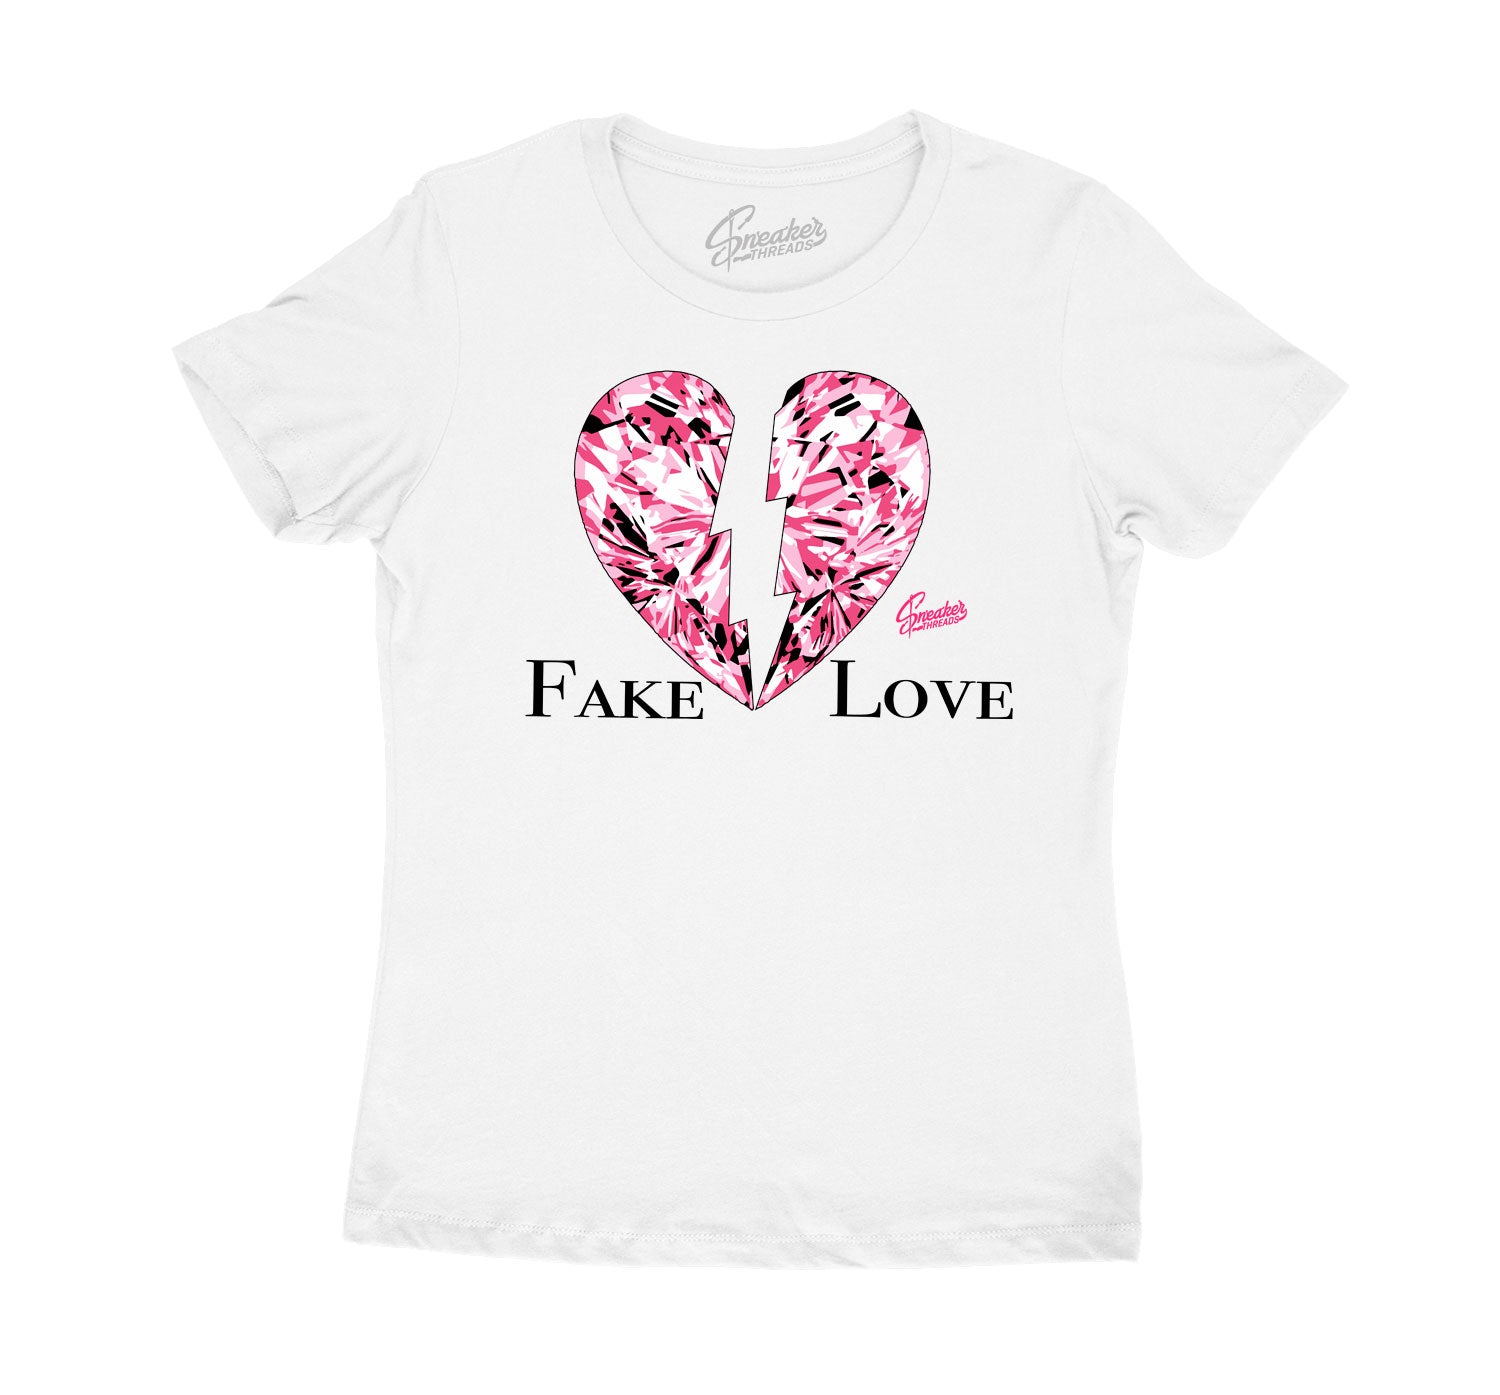 Womens Ice Cream 12 Shirt - Love - White